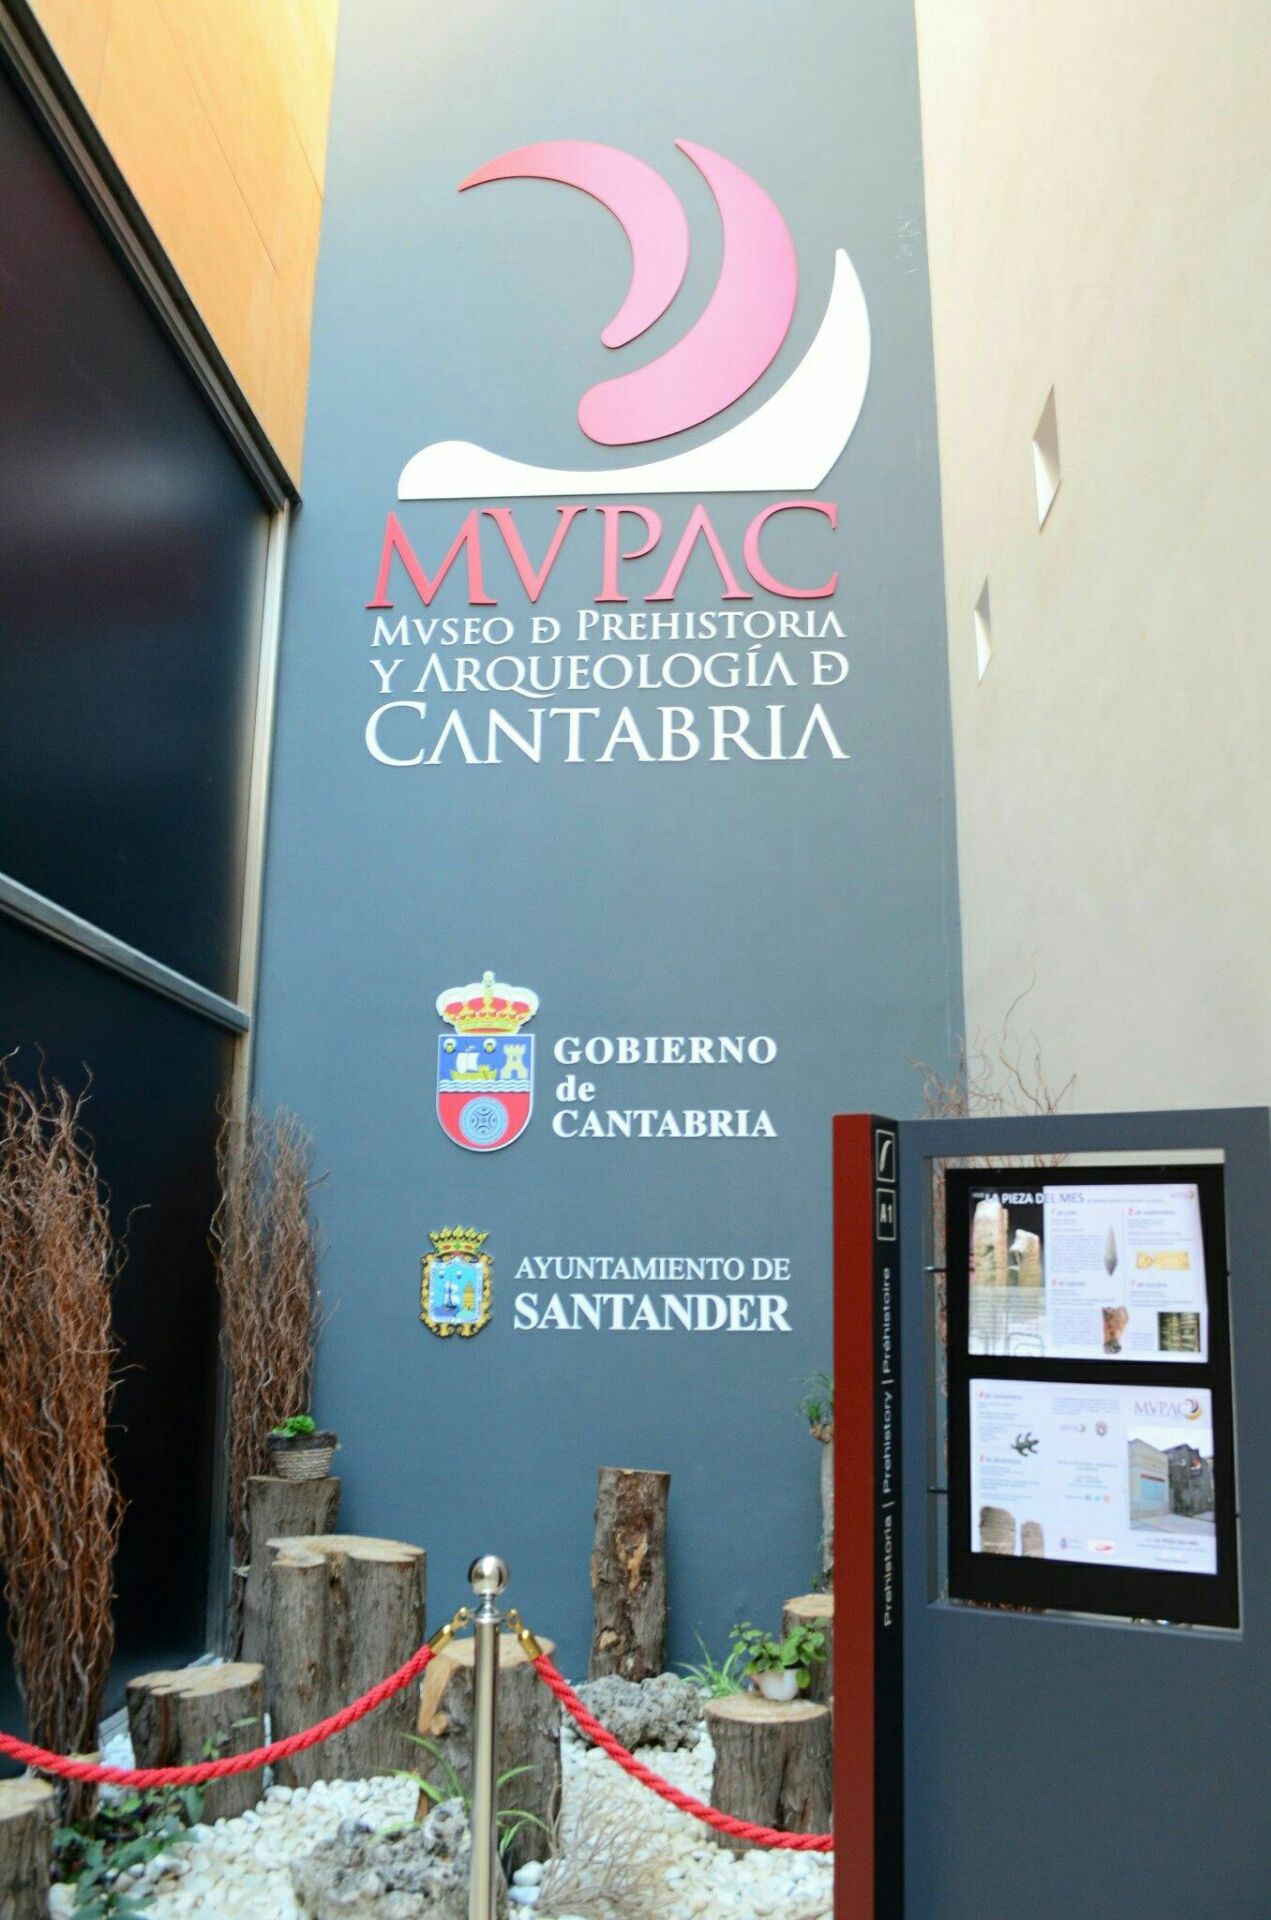 坎塔布里亚地区的考古博物馆，这里有着丰富的考古文物。他是西班牙悠久历史的见证，在这里出土了许多上千年